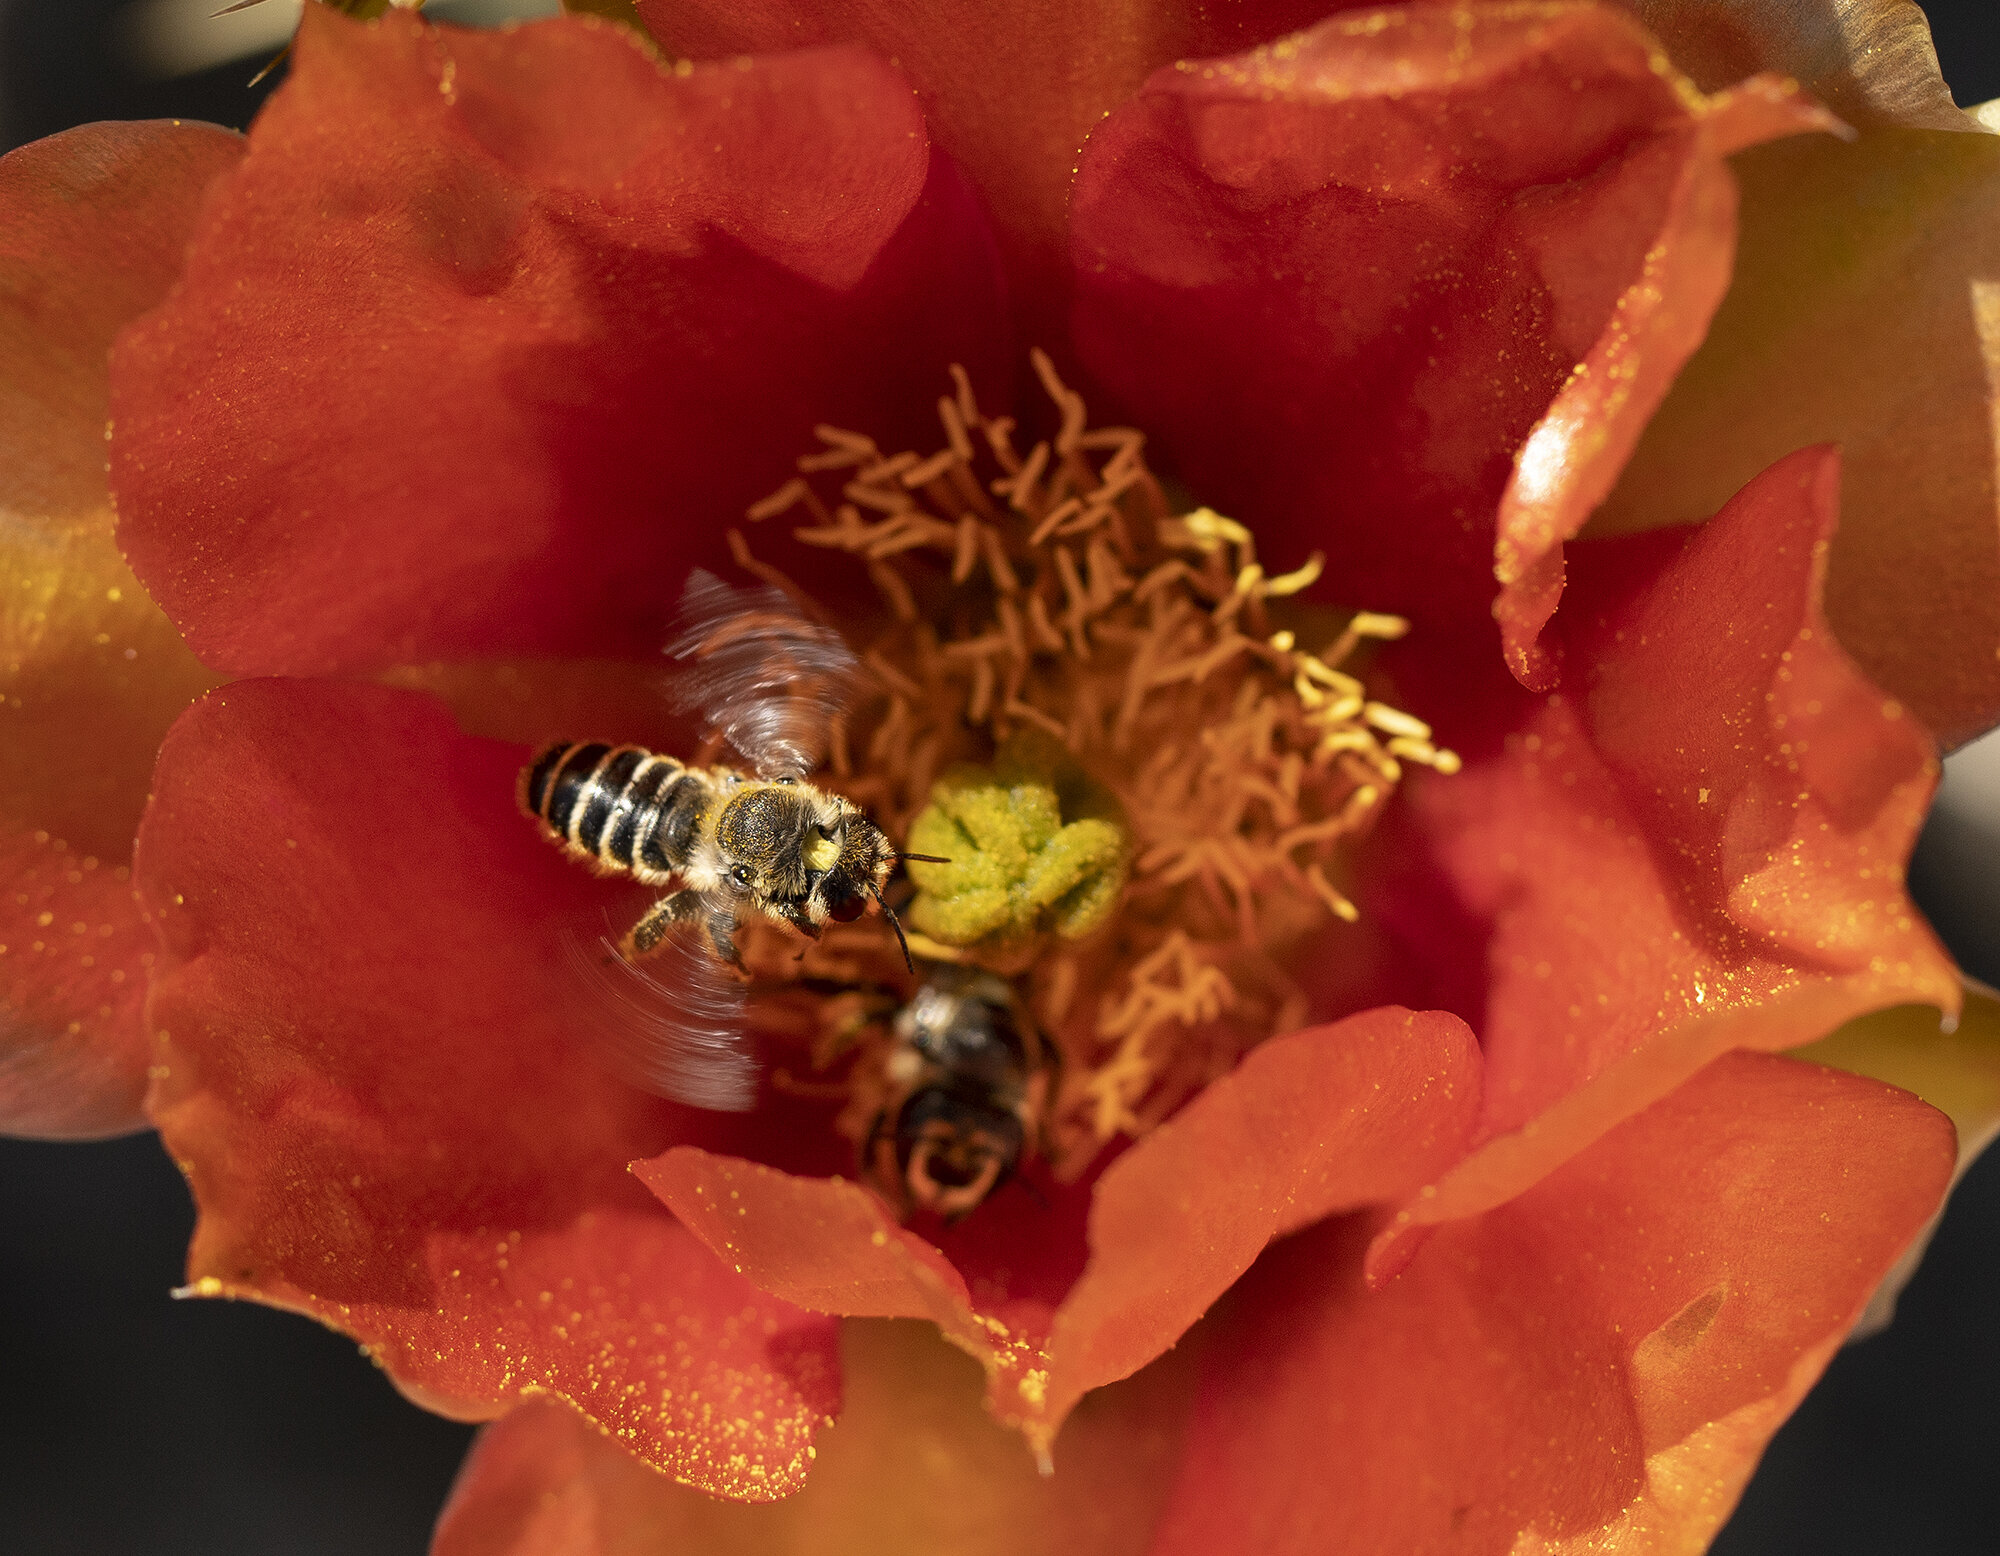 Bee landing on cactus flower by Frank Romero.jpg